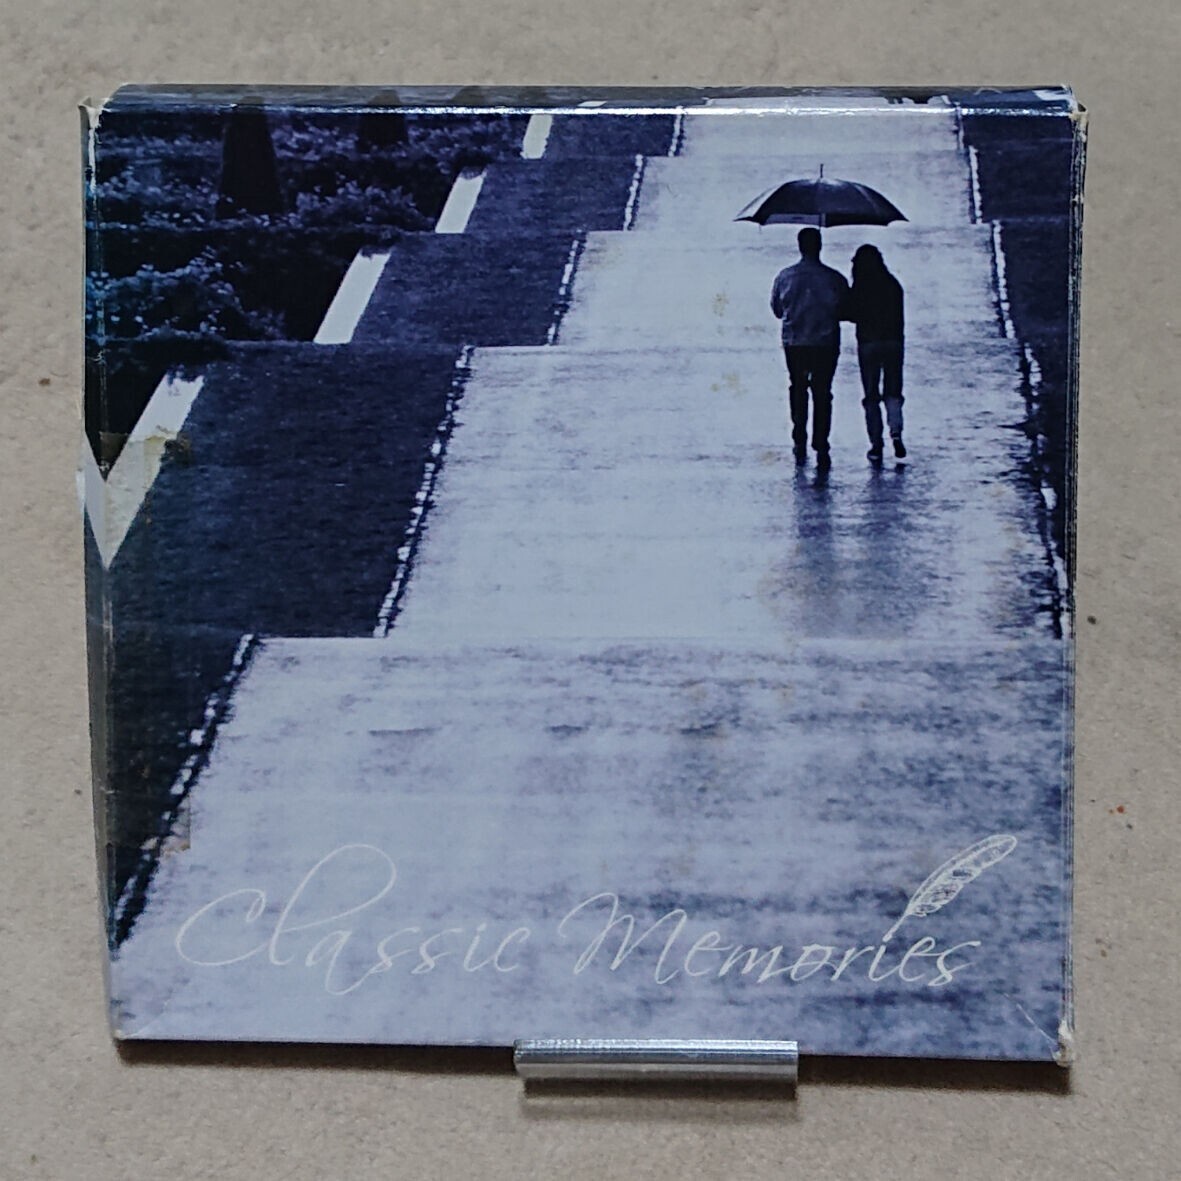 【CD】クラシック・メモリーズ 《5枚組/国内盤》Classic Memoriesの画像2